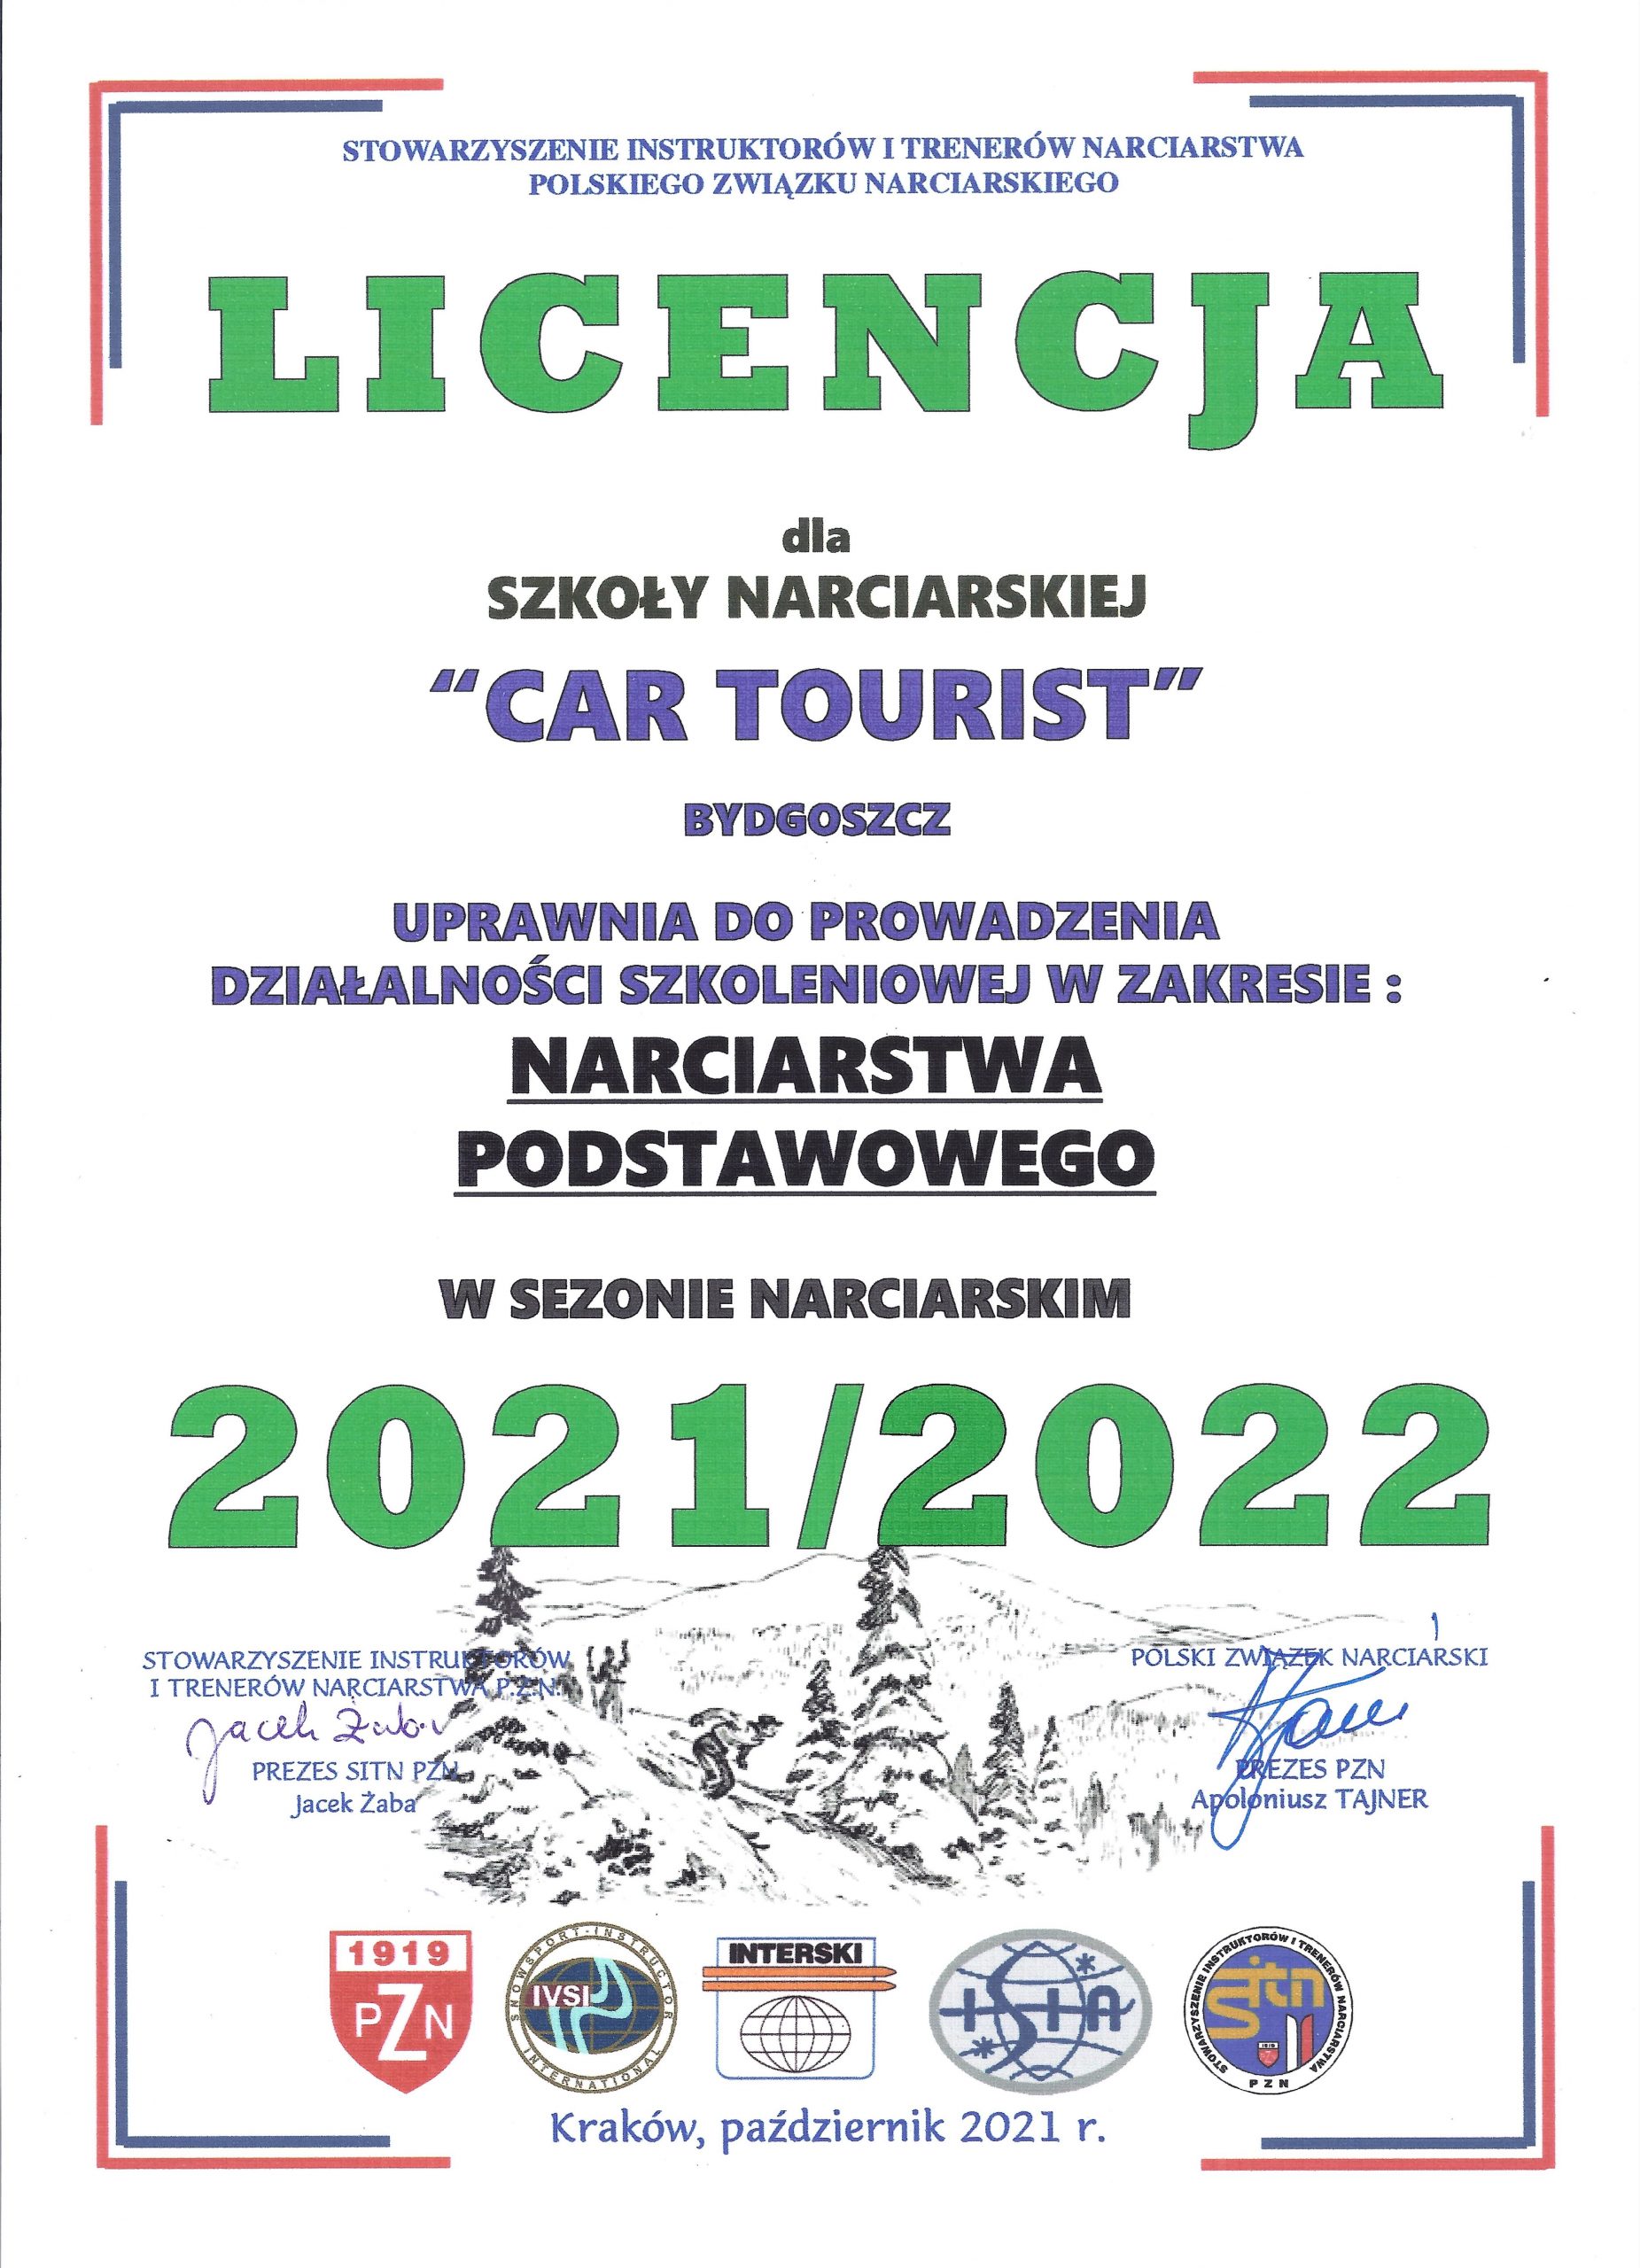 Licencja Cartourist 2020/2021